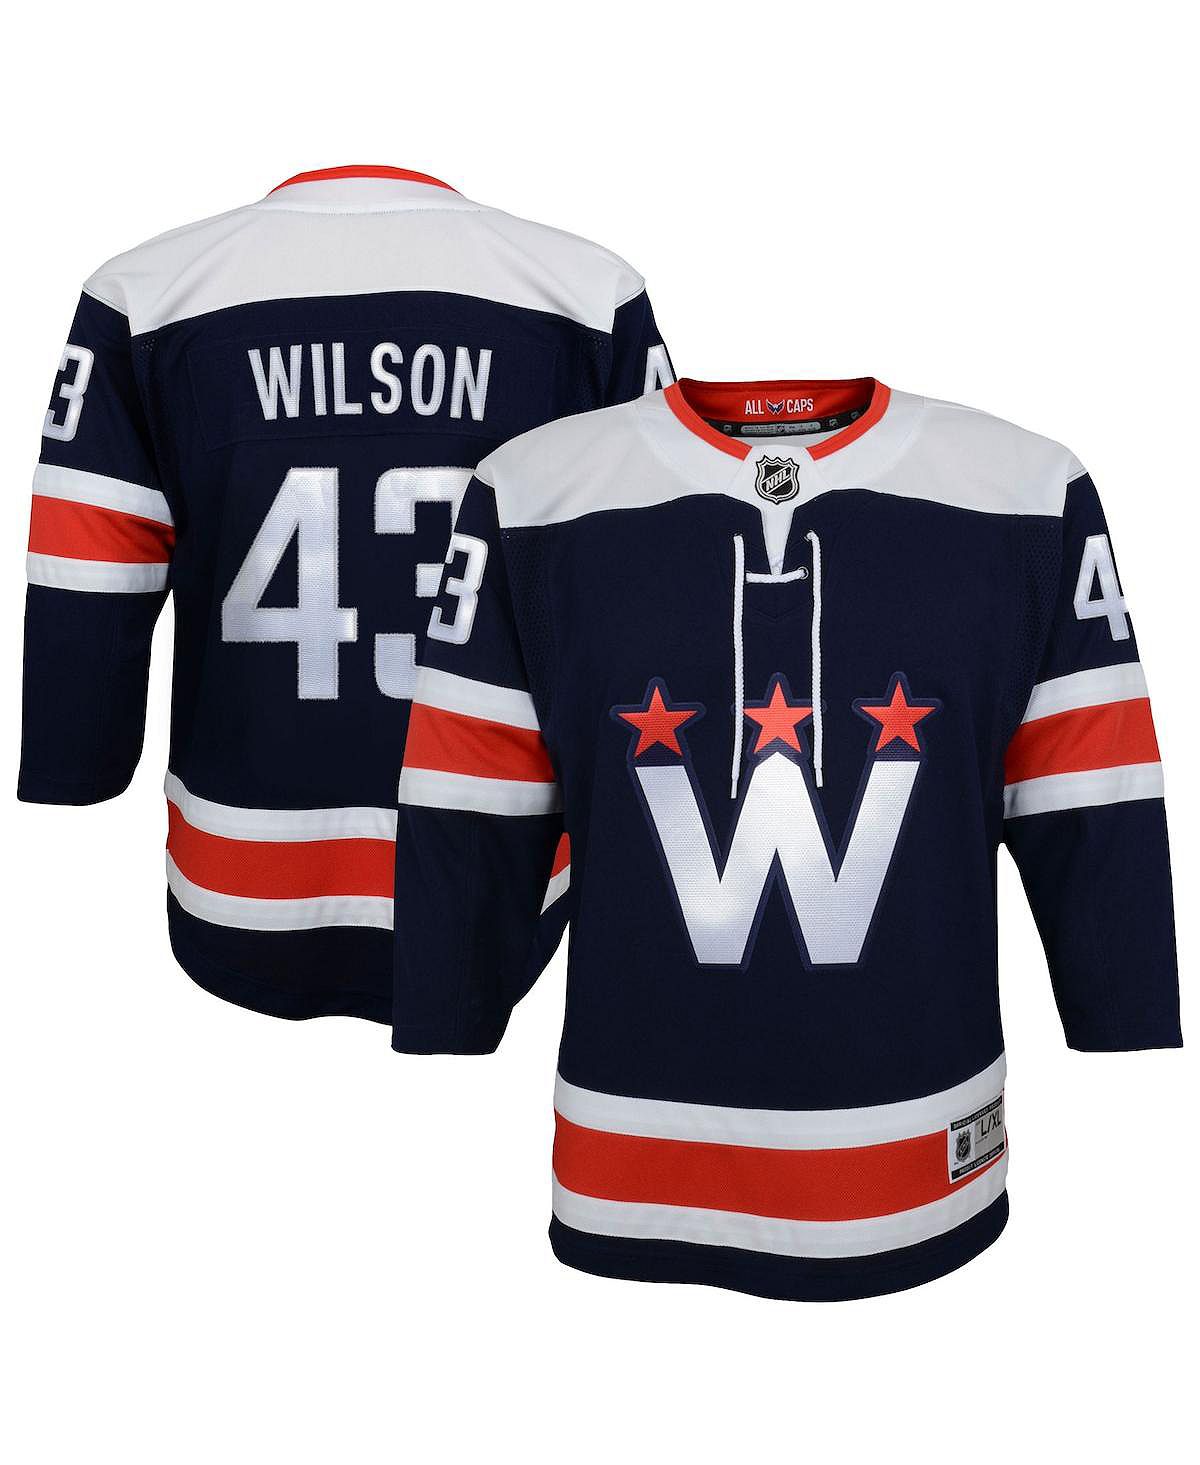 Джерси Big Boys Tom Wilson Navy Washington Capitals 2020/21 запасного игрока премьер-министра Outerstuff